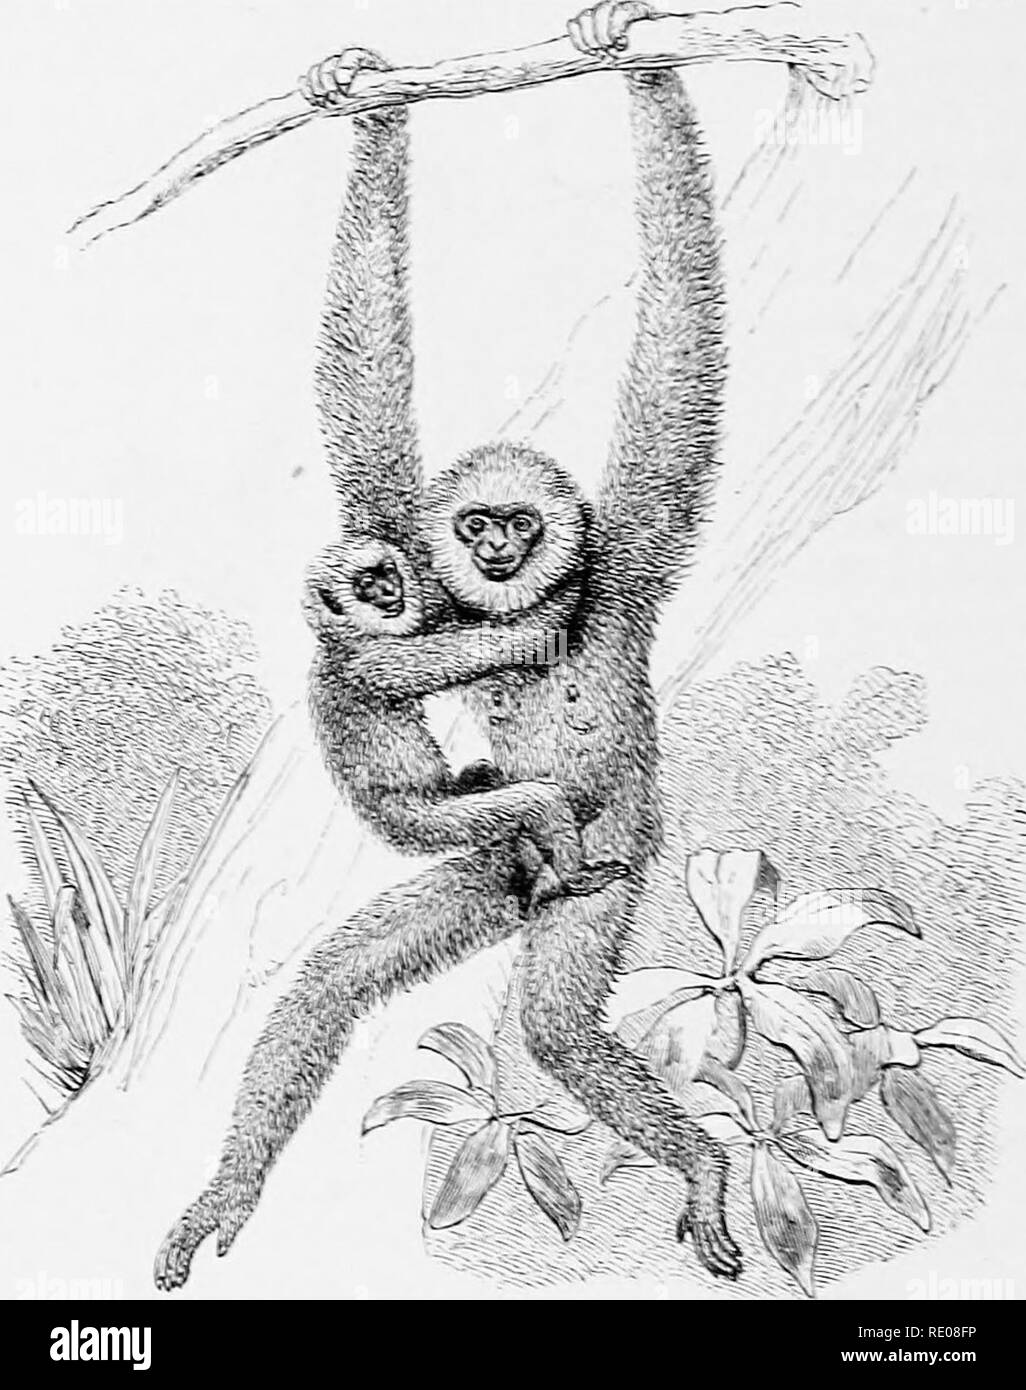 Gibbon manger Banque d'images noir et blanc - Alamy